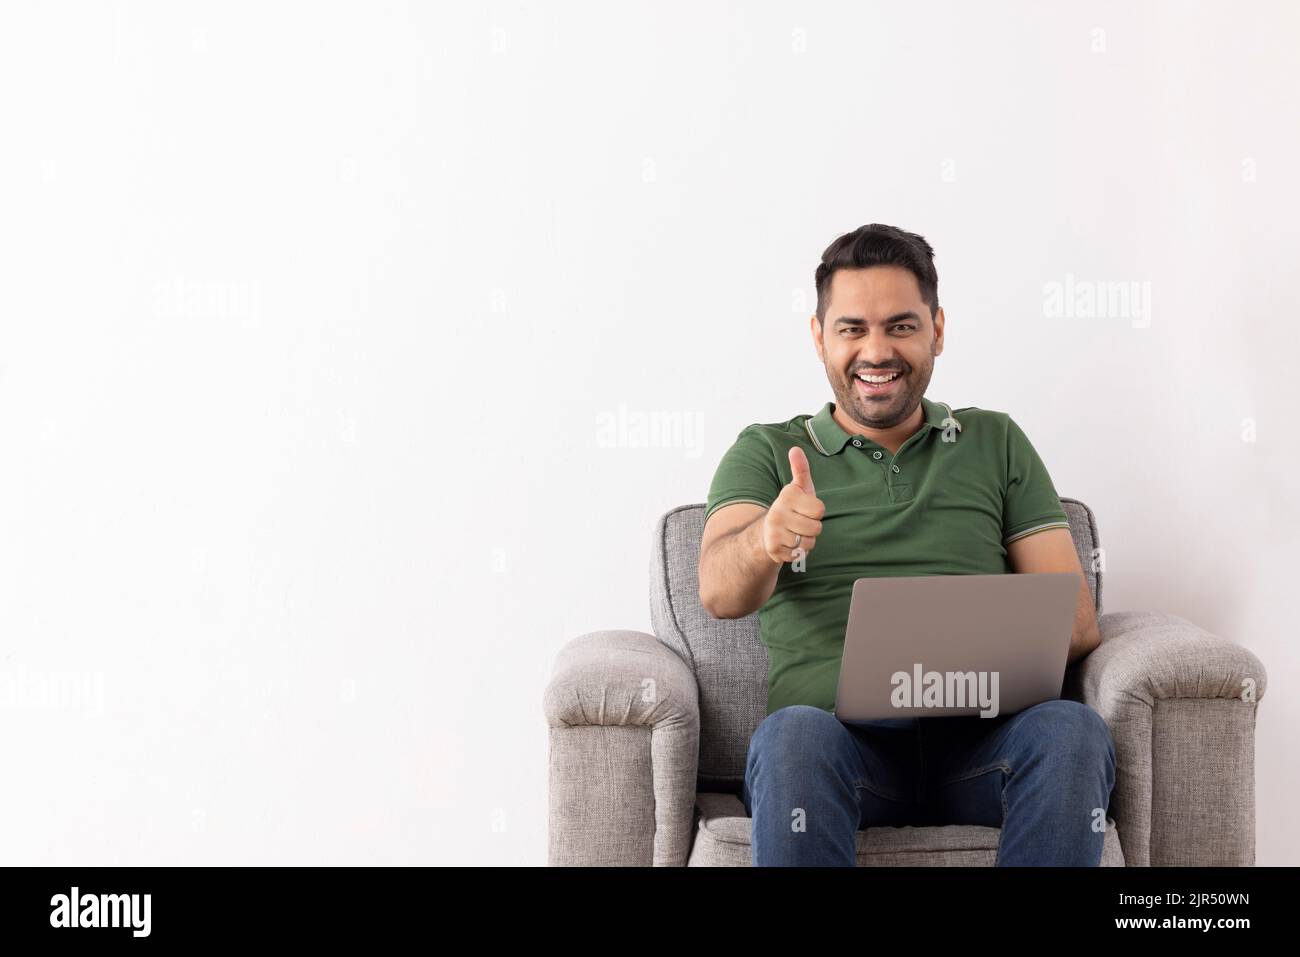 Jeune homme joyeux montrant un geste du pouce assis sur un canapé avec un ordinateur portable sur ses genoux Banque D'Images